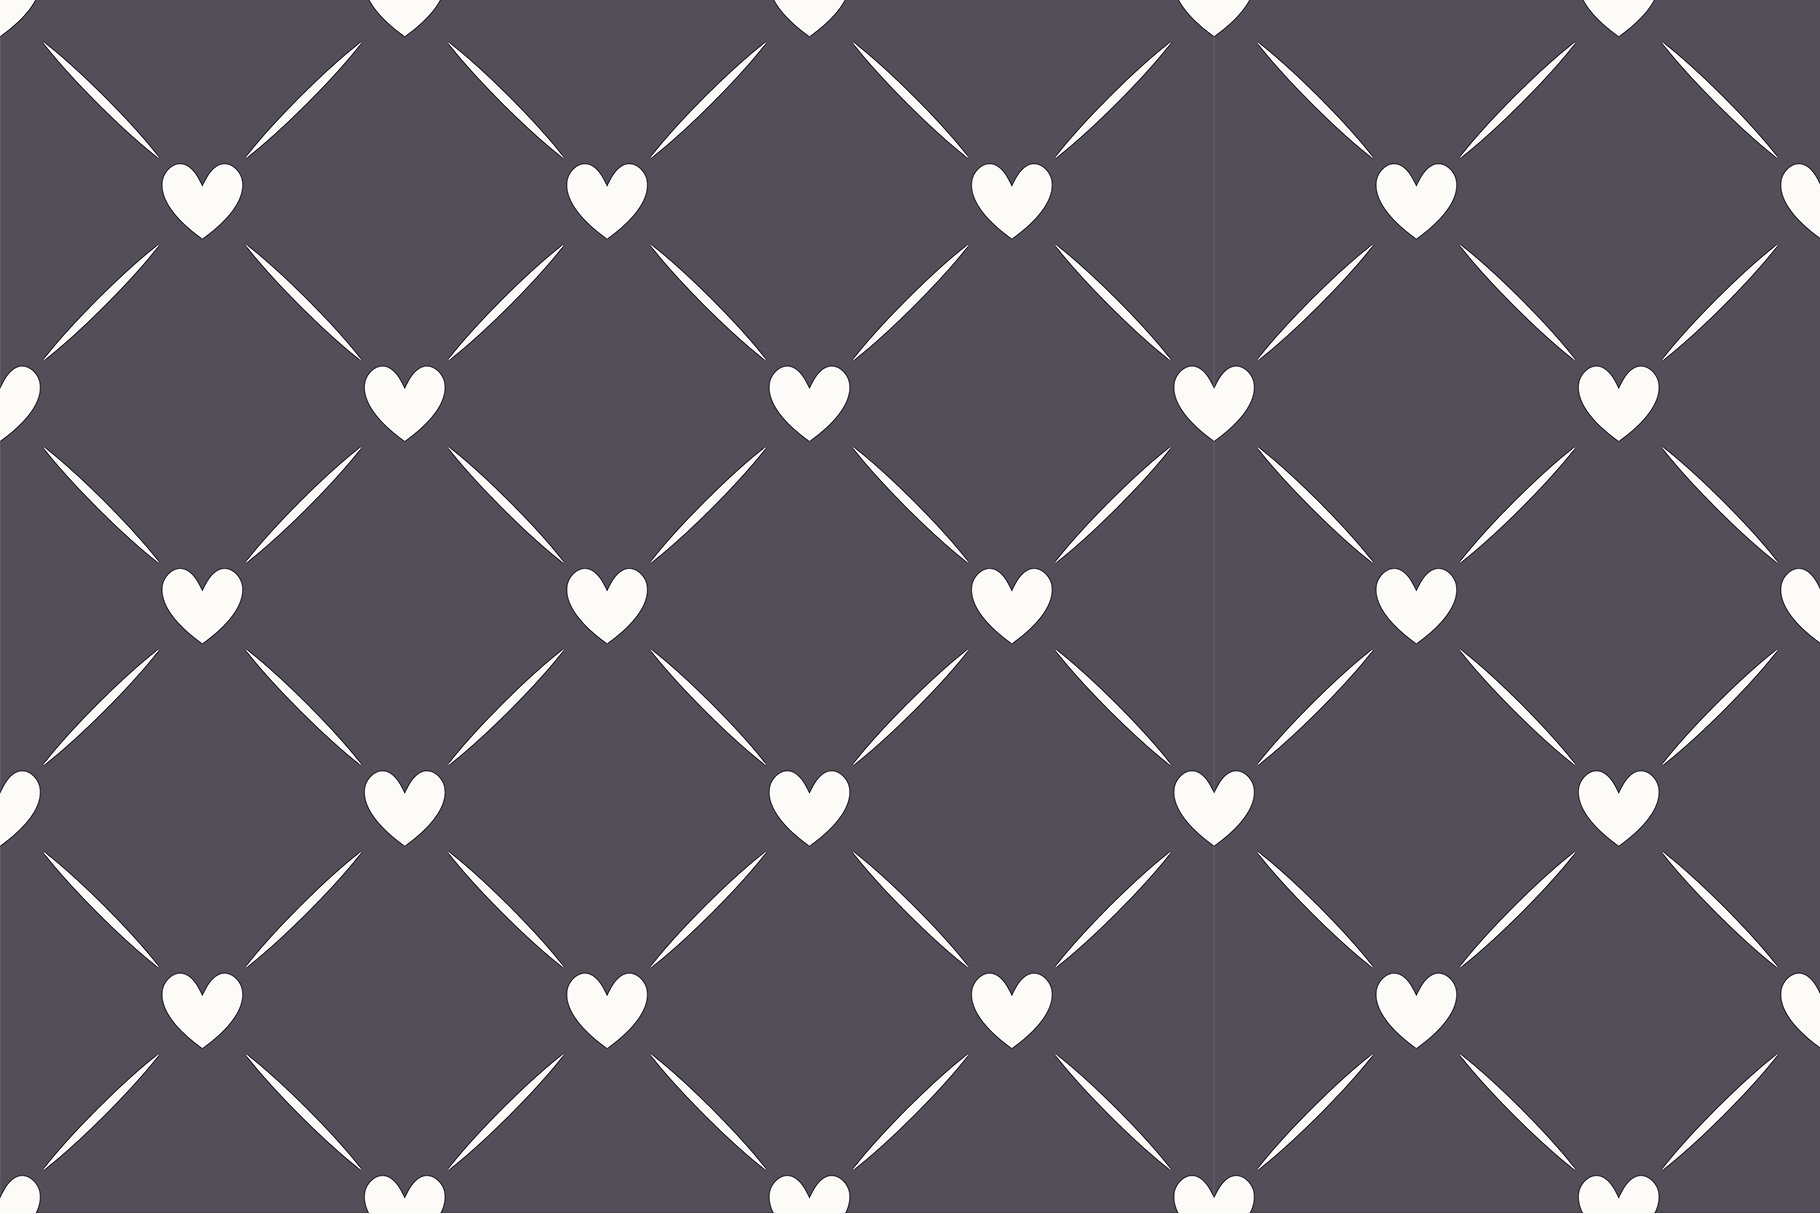 心形无缝纹理集 Hearts Seamless Patterns Set插图(5)